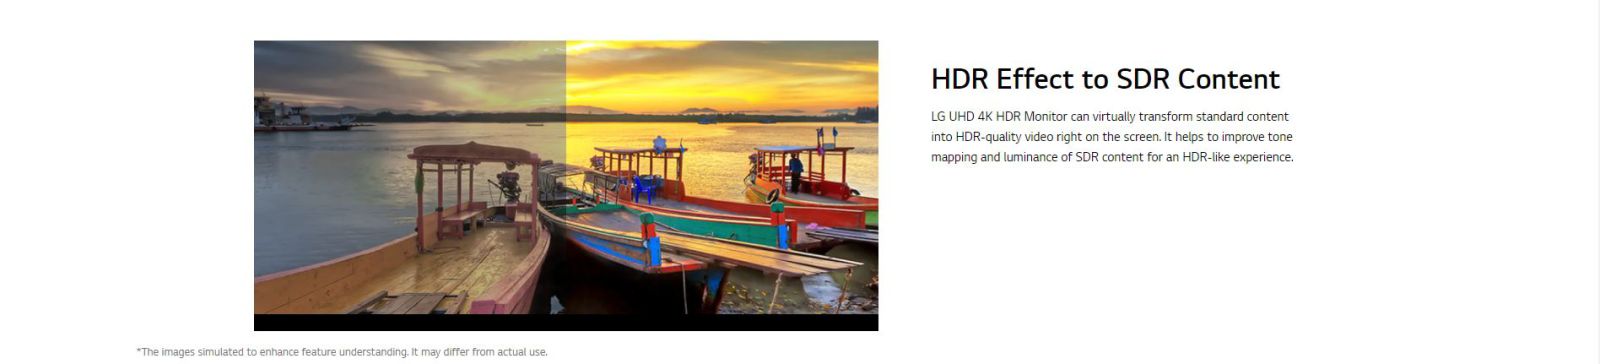 LG 27” IPS 4K UHD VESA HDR400 USB-C Monitor